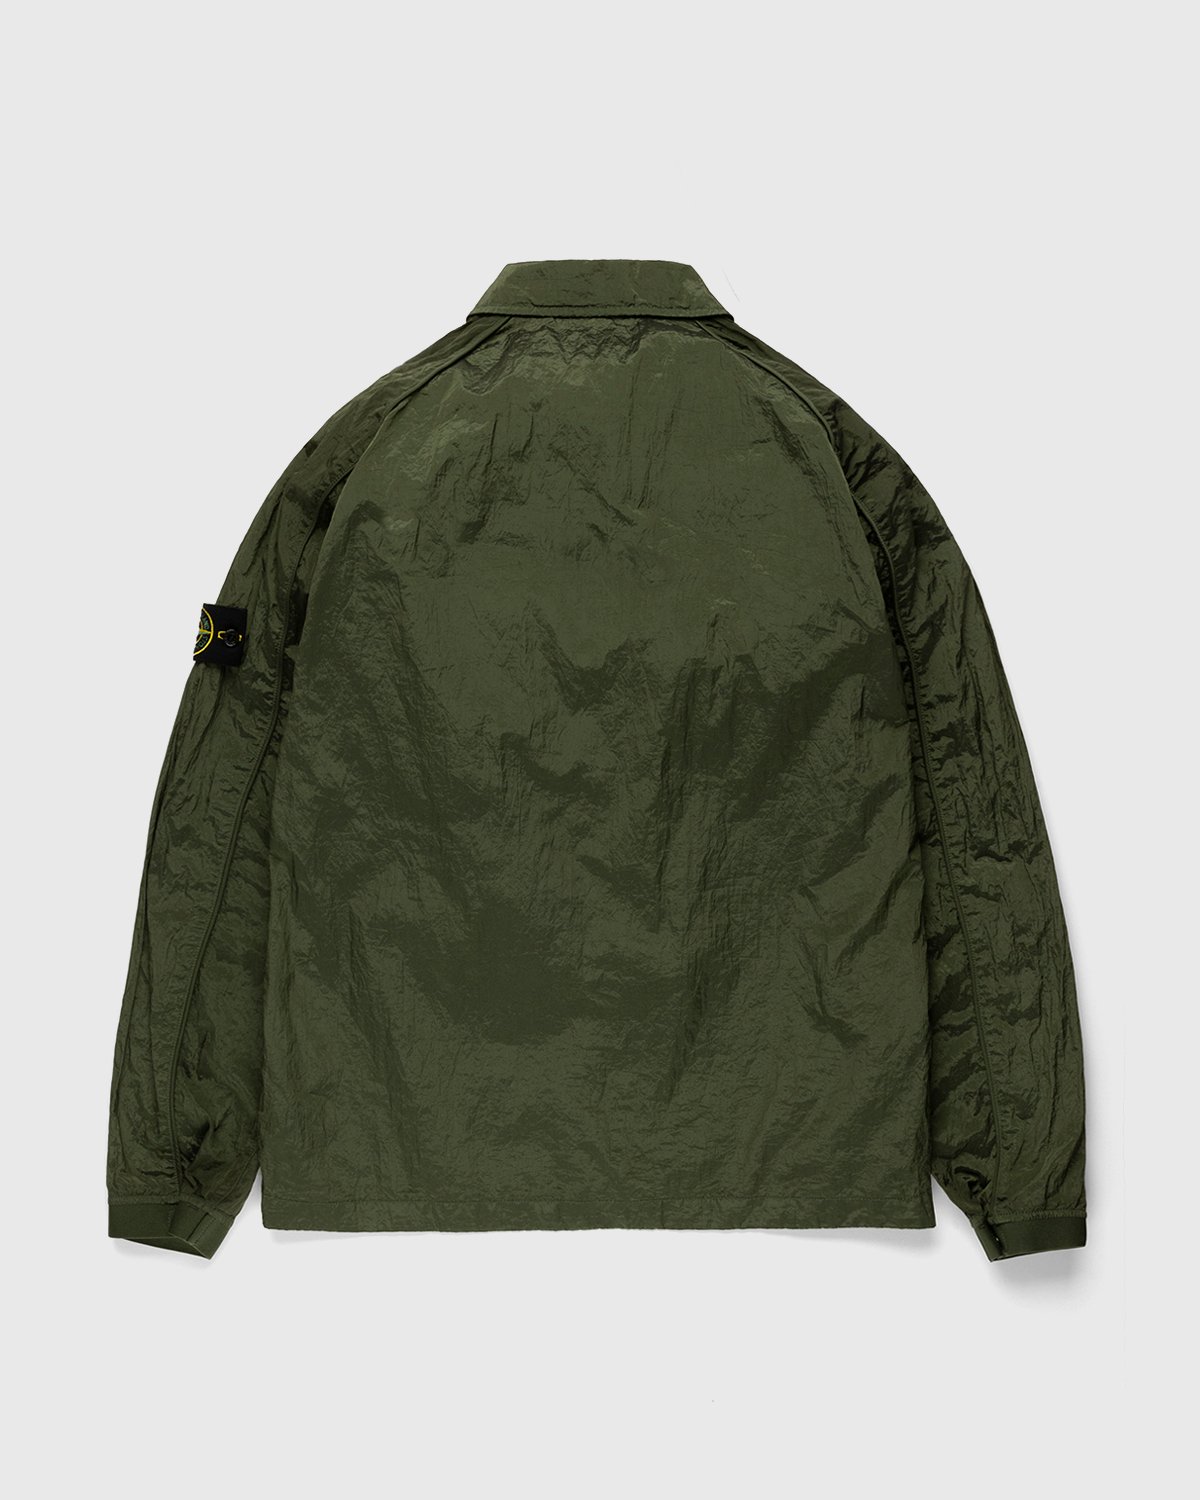 Stone Island - 12321 Garment-Dyed Nylon Metal Overshirt Olive - Clothing - Green - Image 2